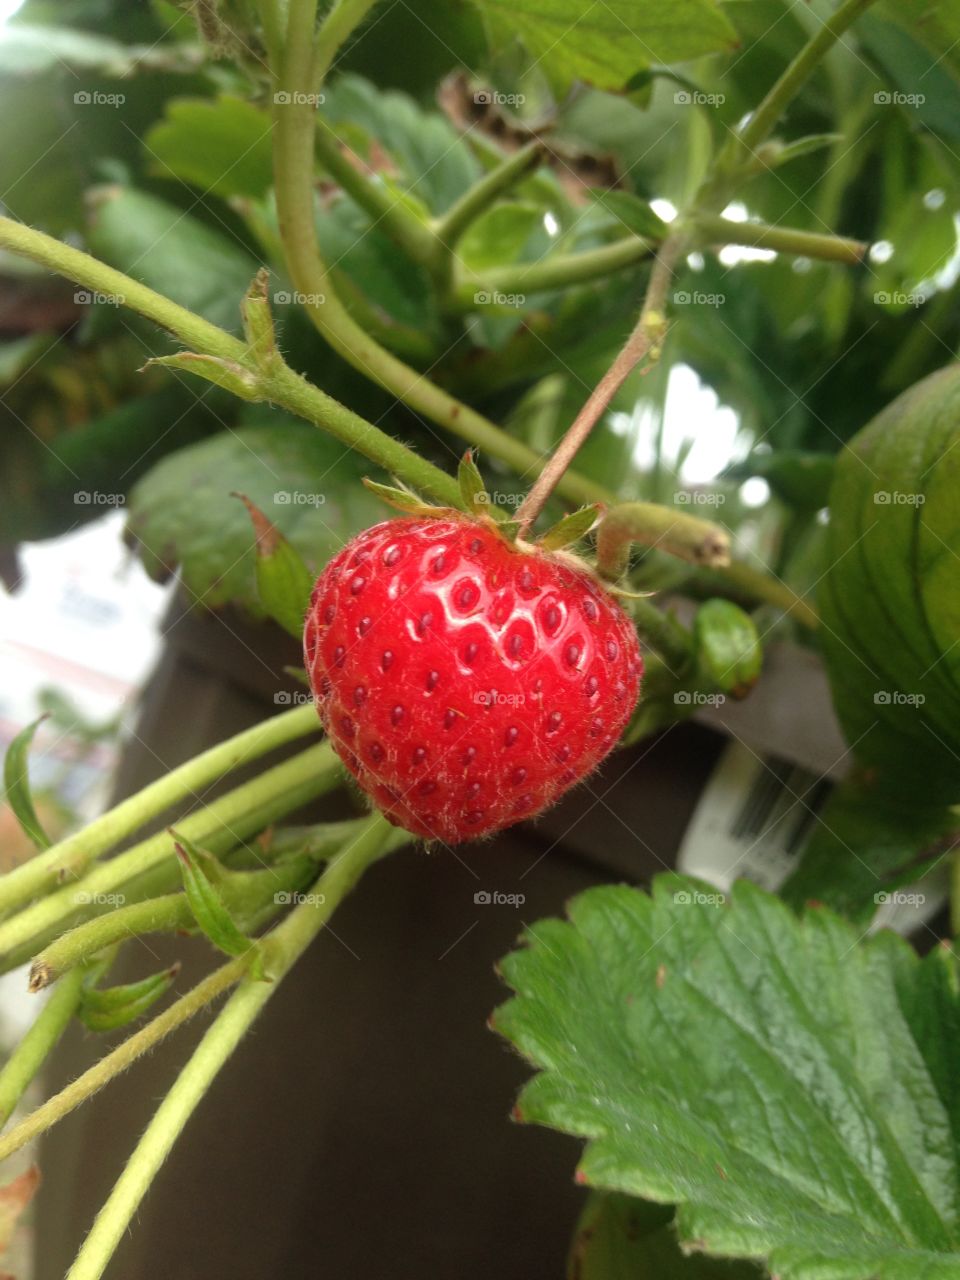 little teeny tiny strawberry